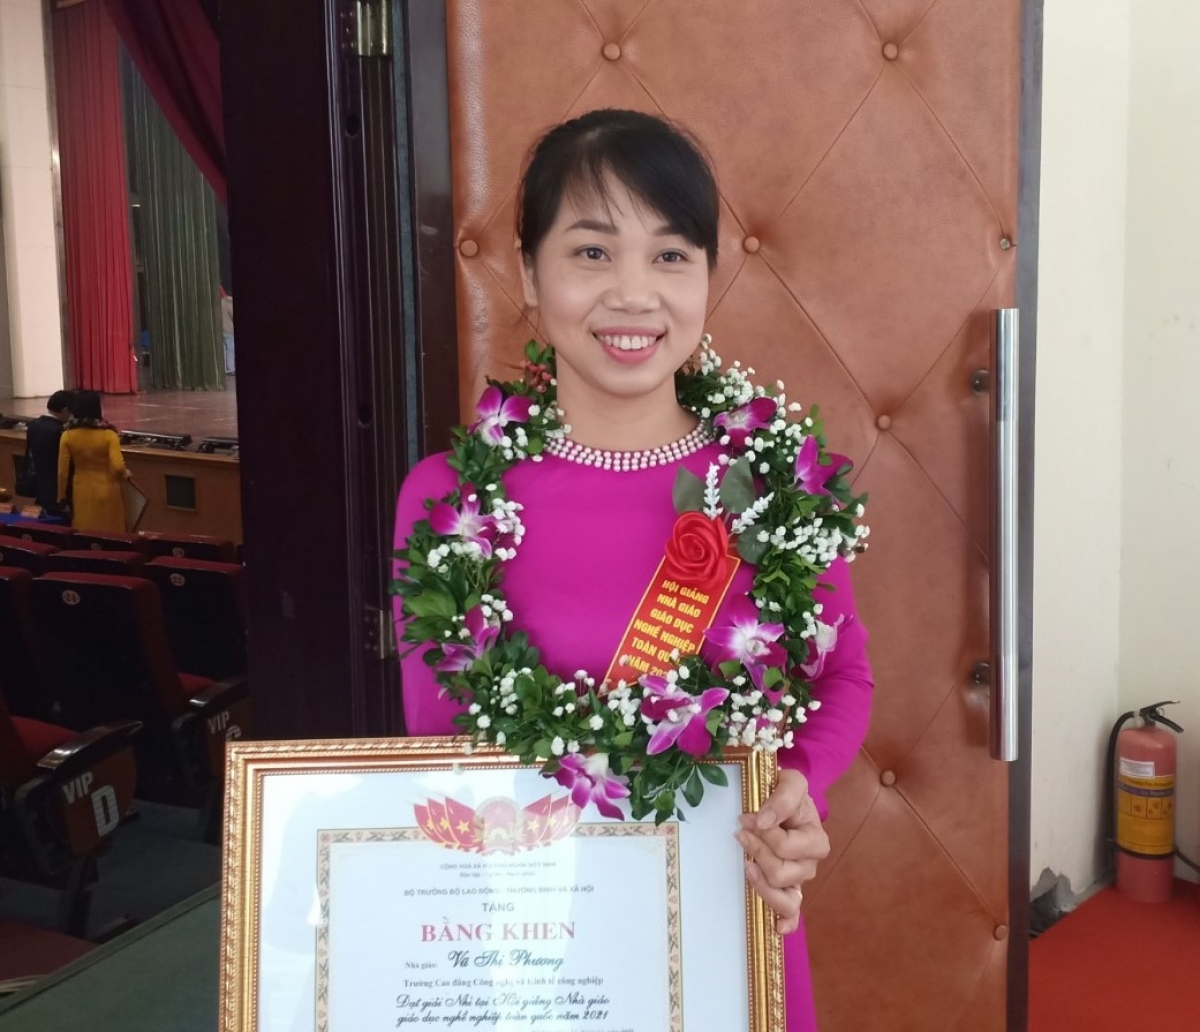 Cô Vũ Thị Phương đạt giải Nhì Hội giảng nhà giáo giáo dục nghề nghiệp năm 2021